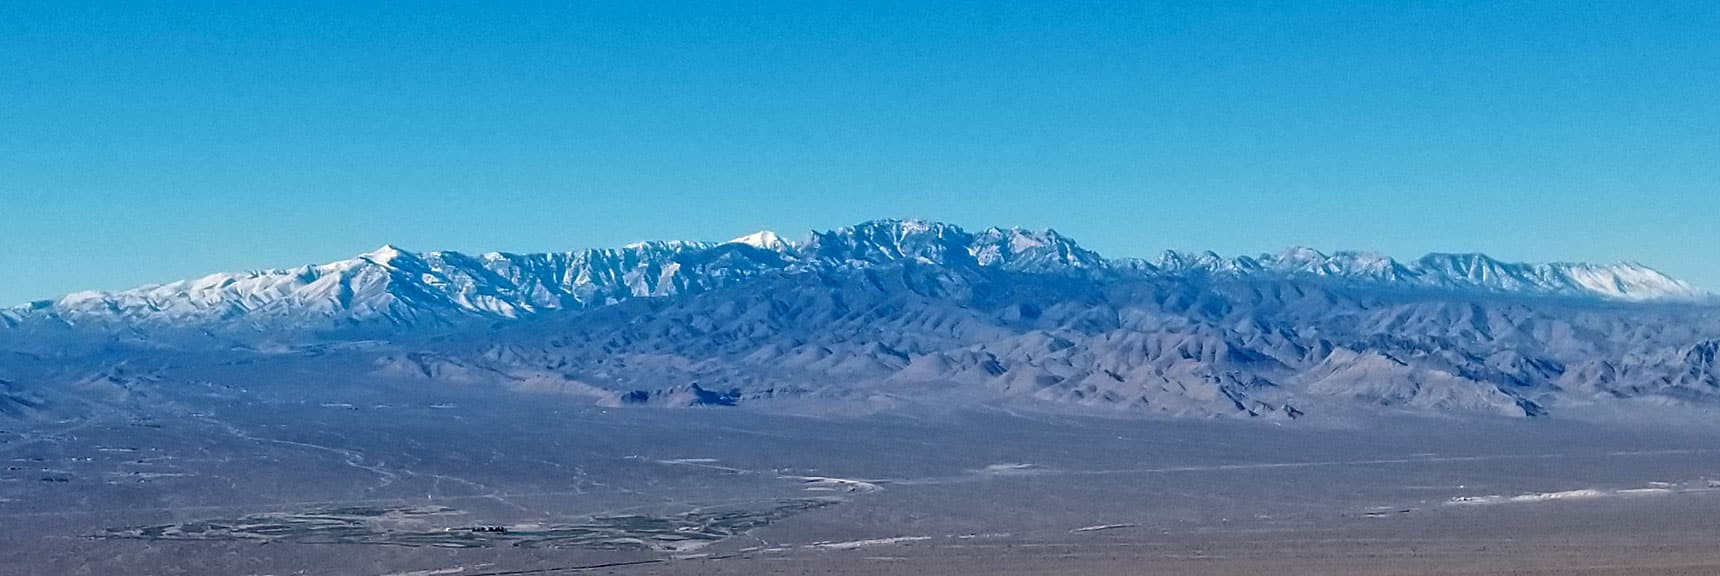 Mt. Charleston Wilderness Viewed from Gass Peak Summit, Nevada